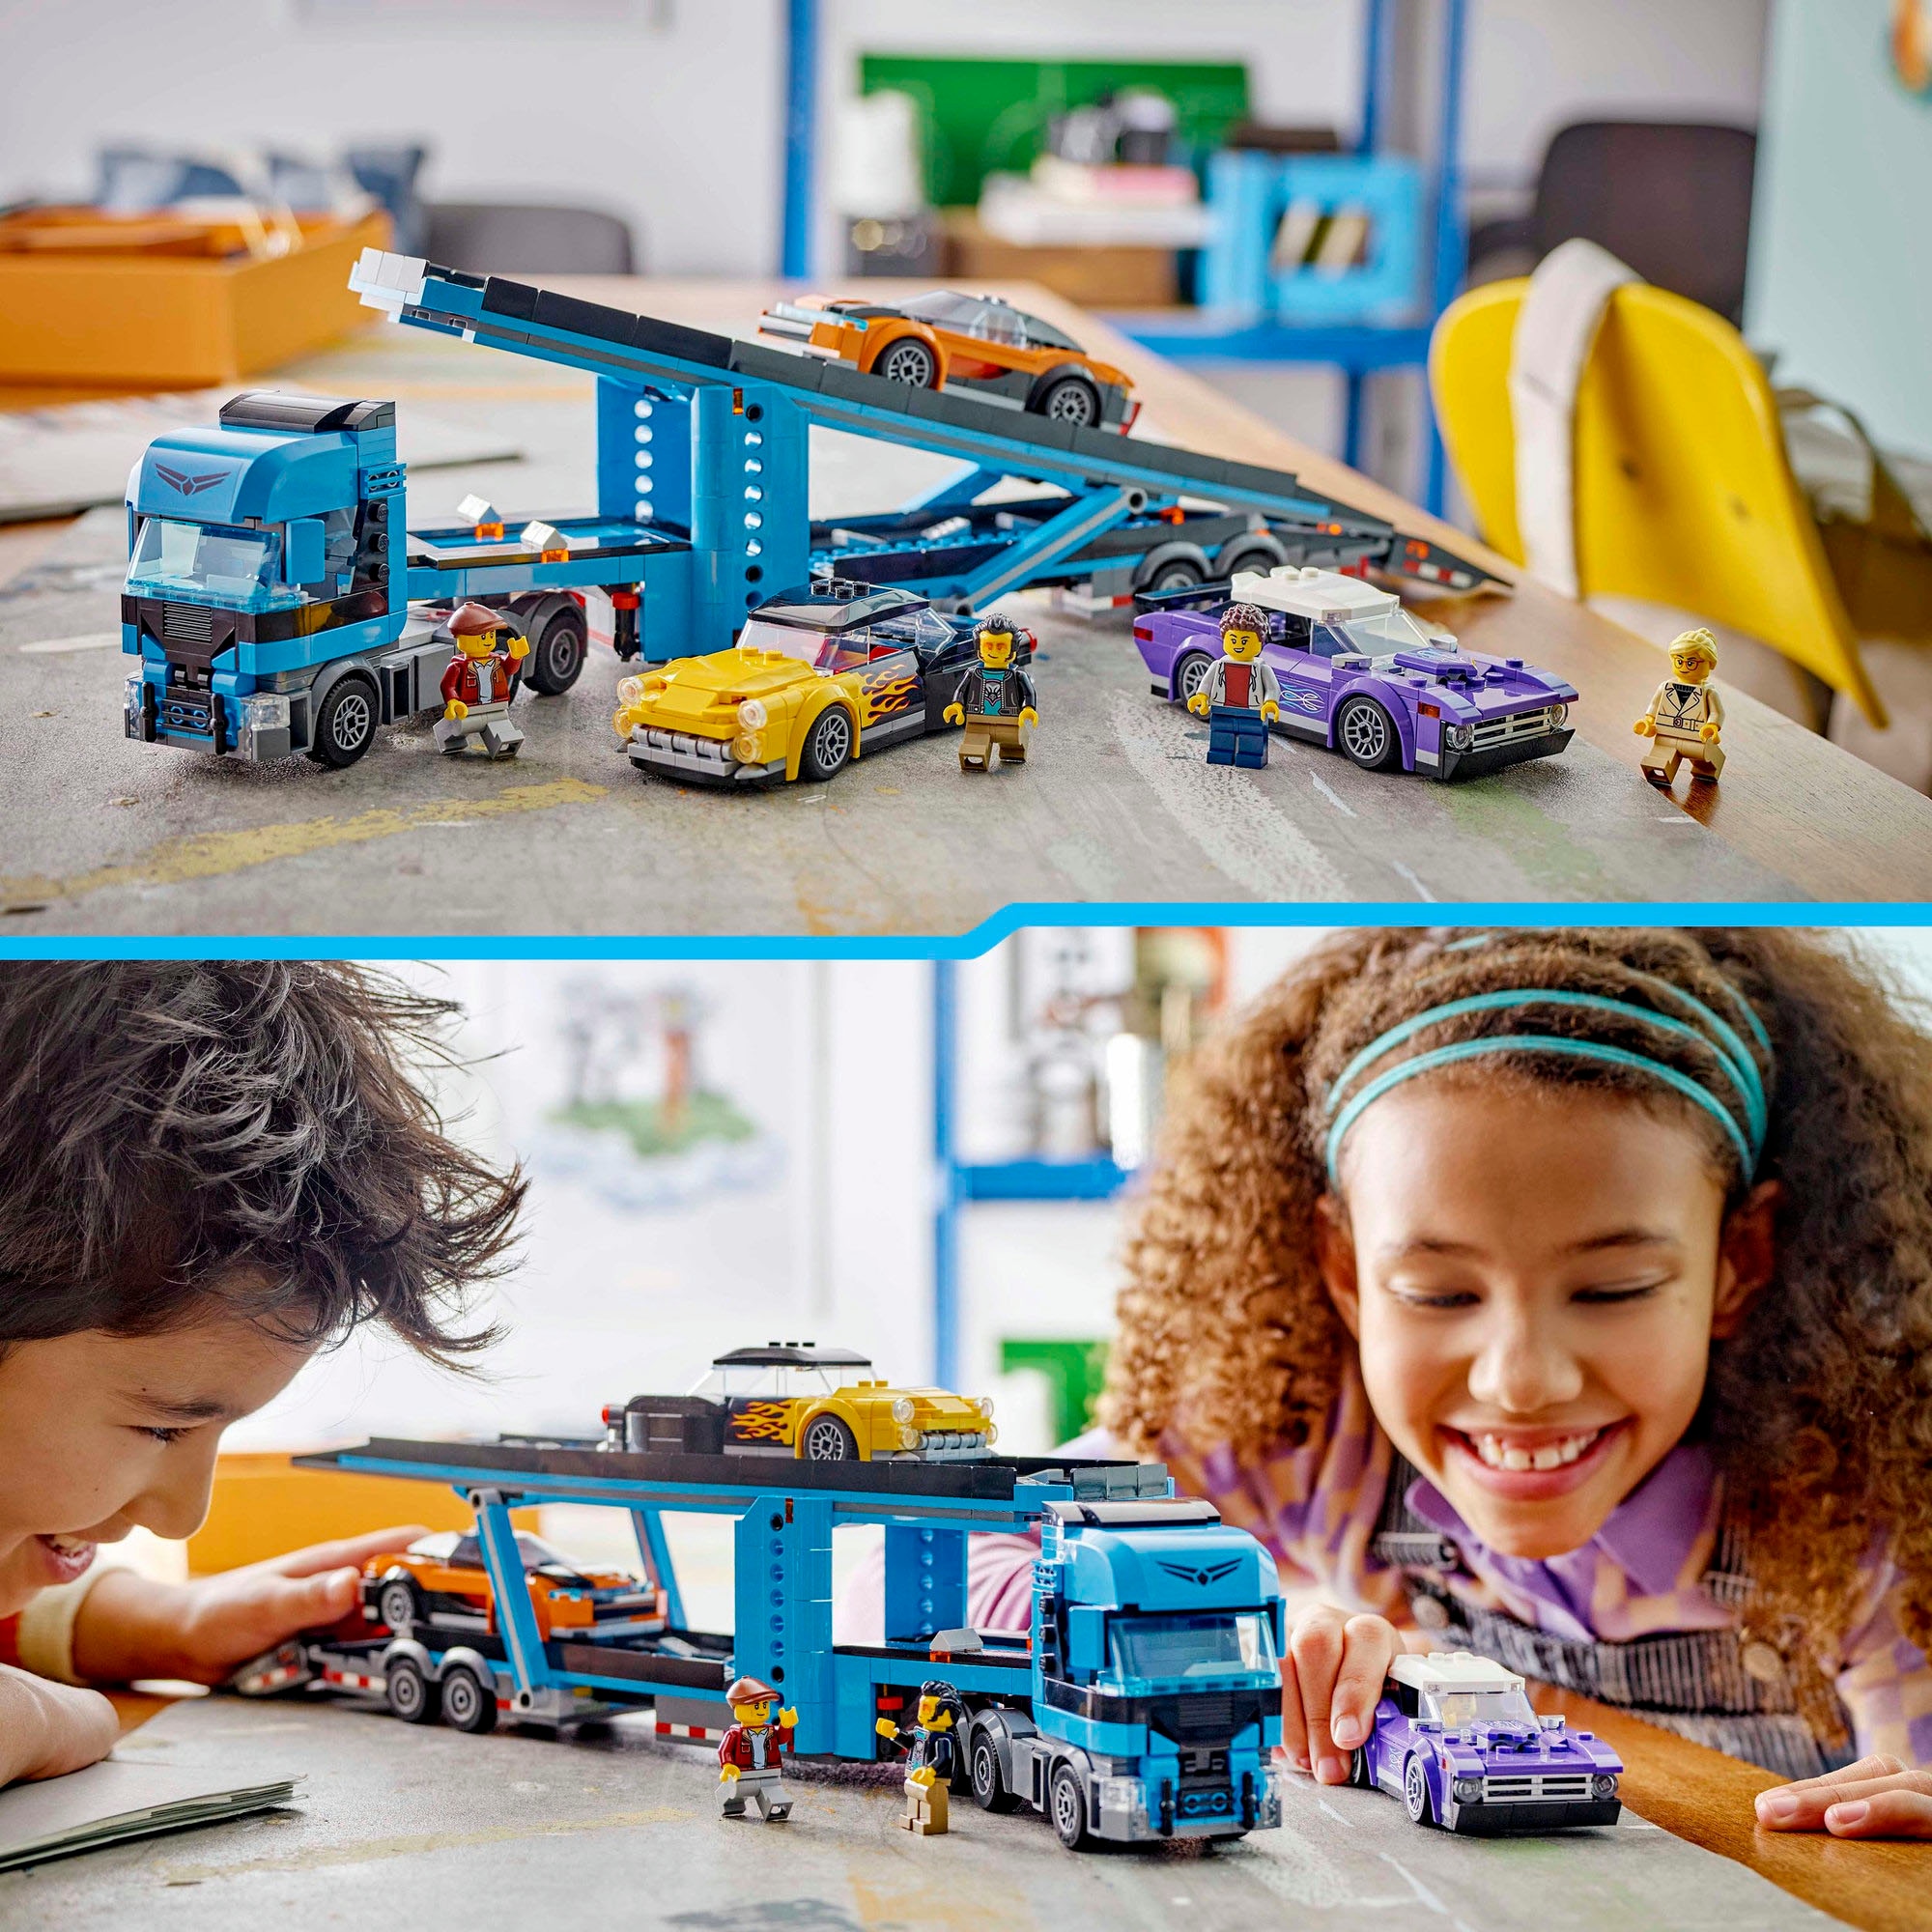 LEGO® Konstruktionsspielsteine »Autotransporter mit Sportwagen (60408), LEGO City«, (998 St.), Made in Europe